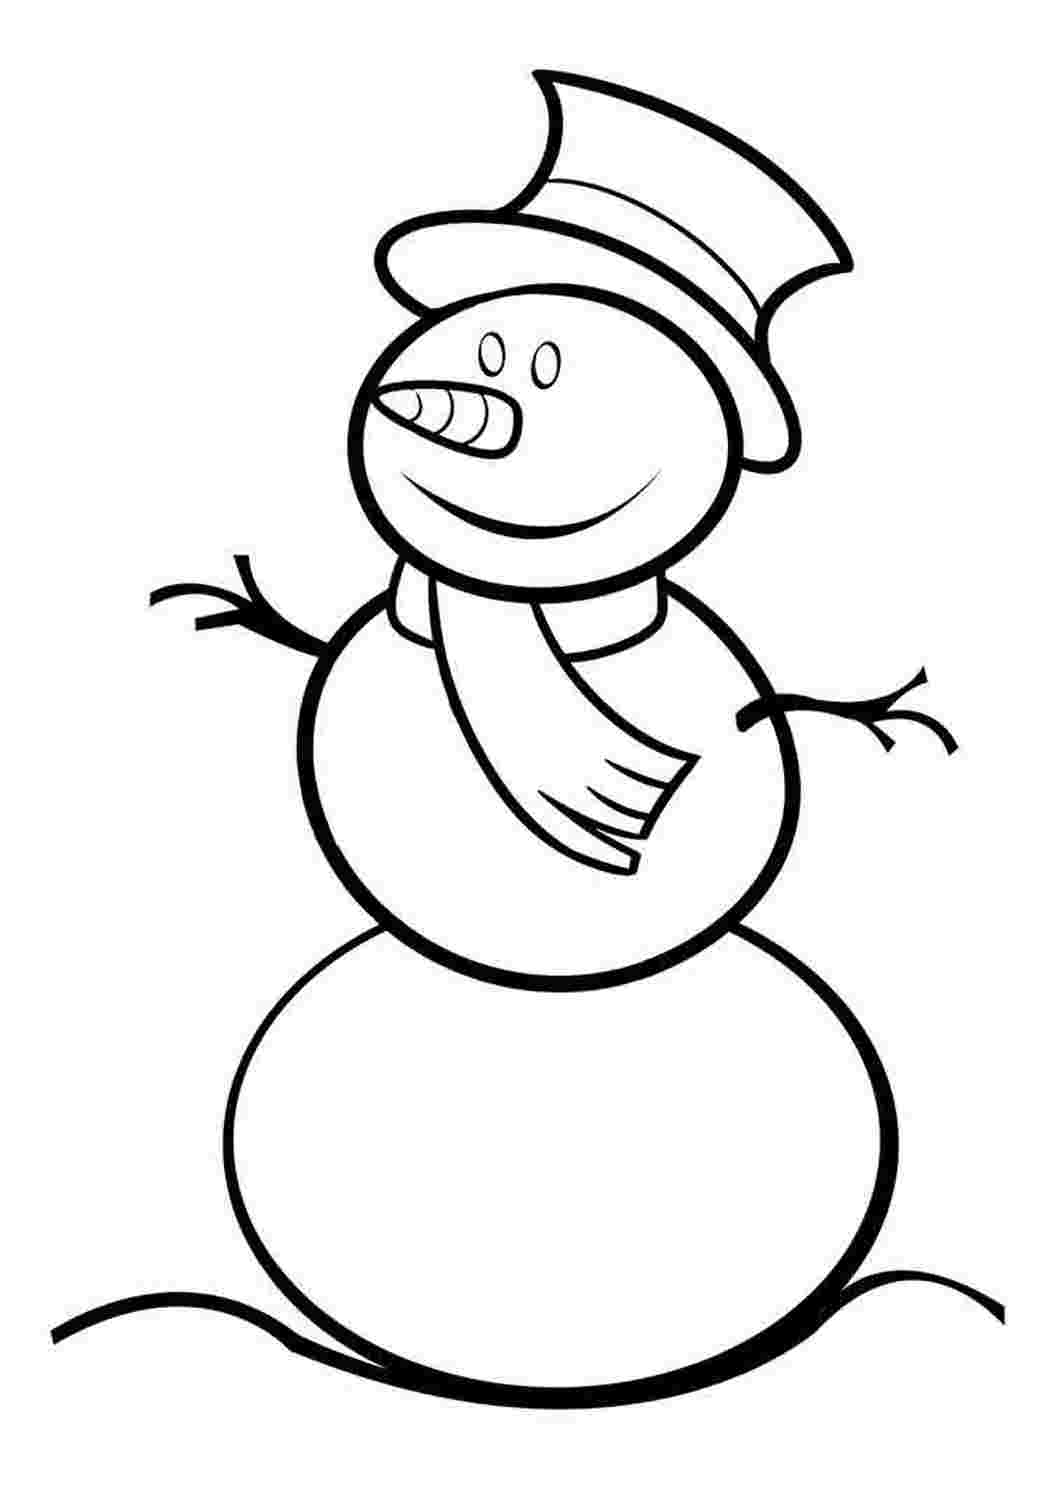 Раскраски Снеговик раскраска для малышей. Раскрашивать онлайн. Снеговик раскраска для малышей. Онлайн раскраски.